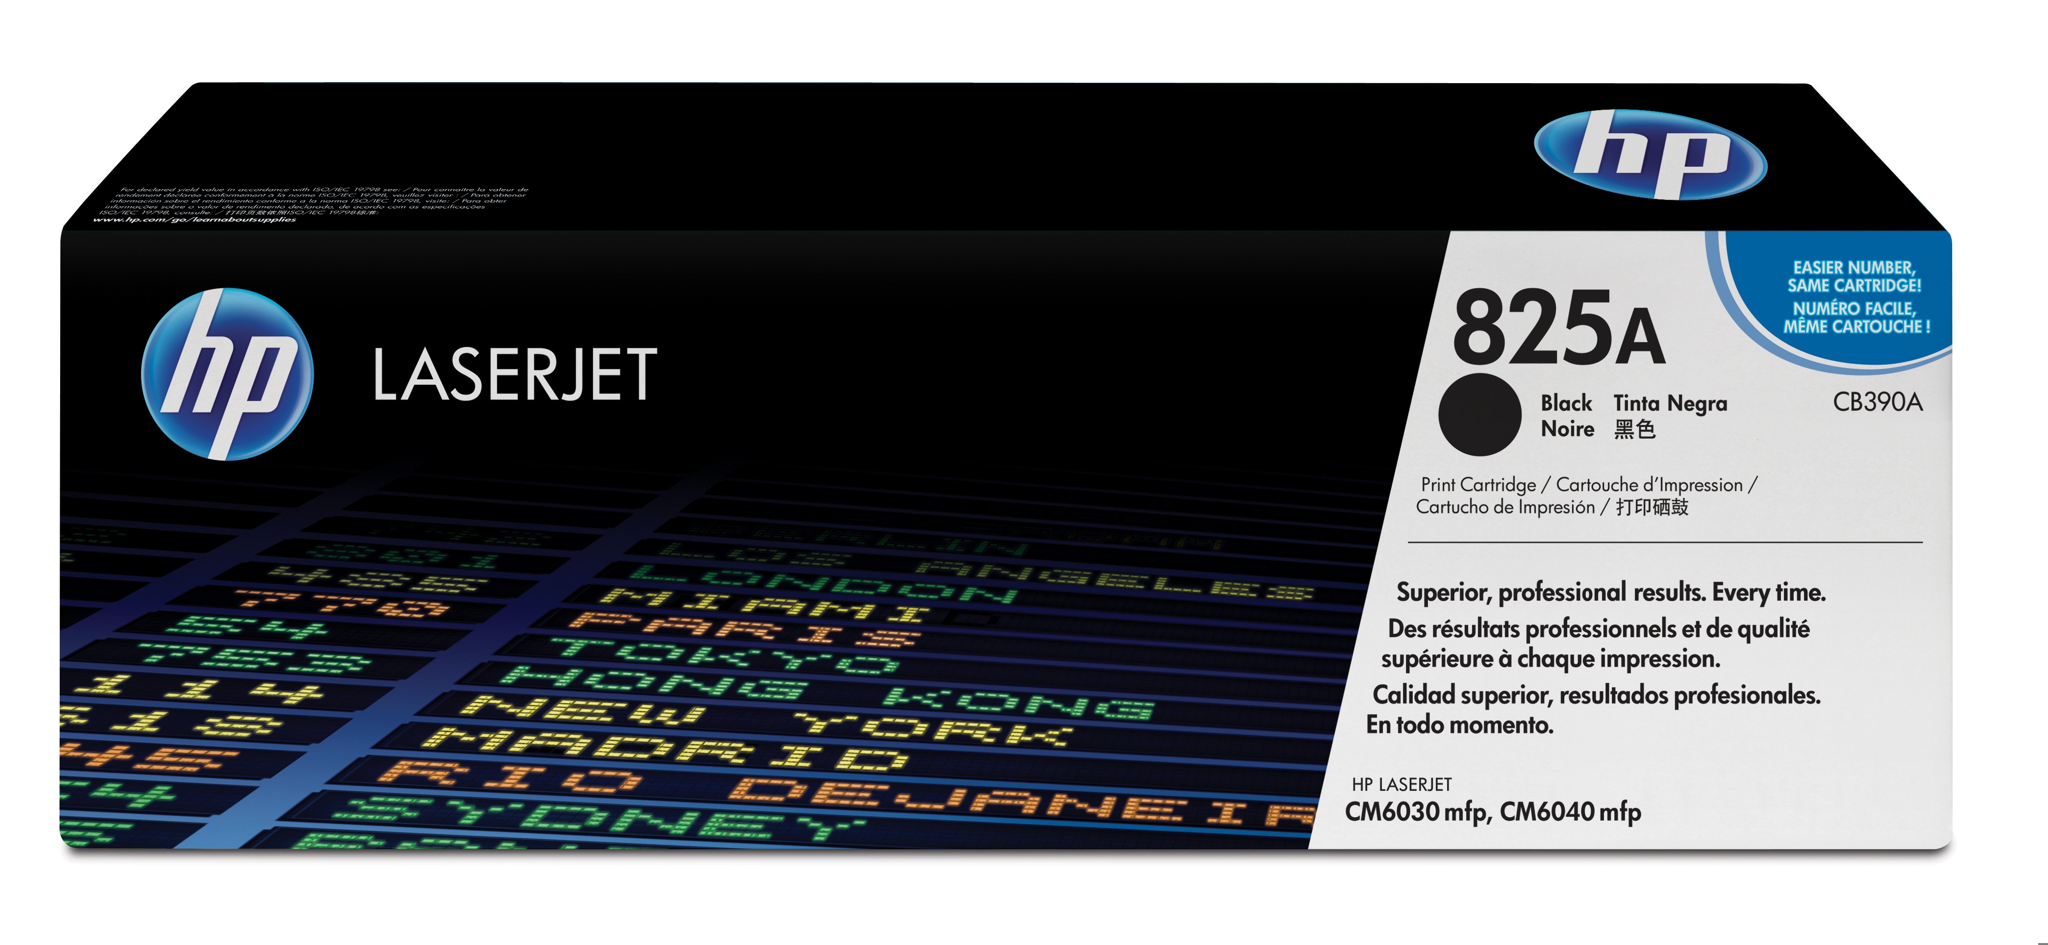 Bild von HP Color LaserJet 825A - Tonereinheit Original - Schwarz - 19.500 Seiten